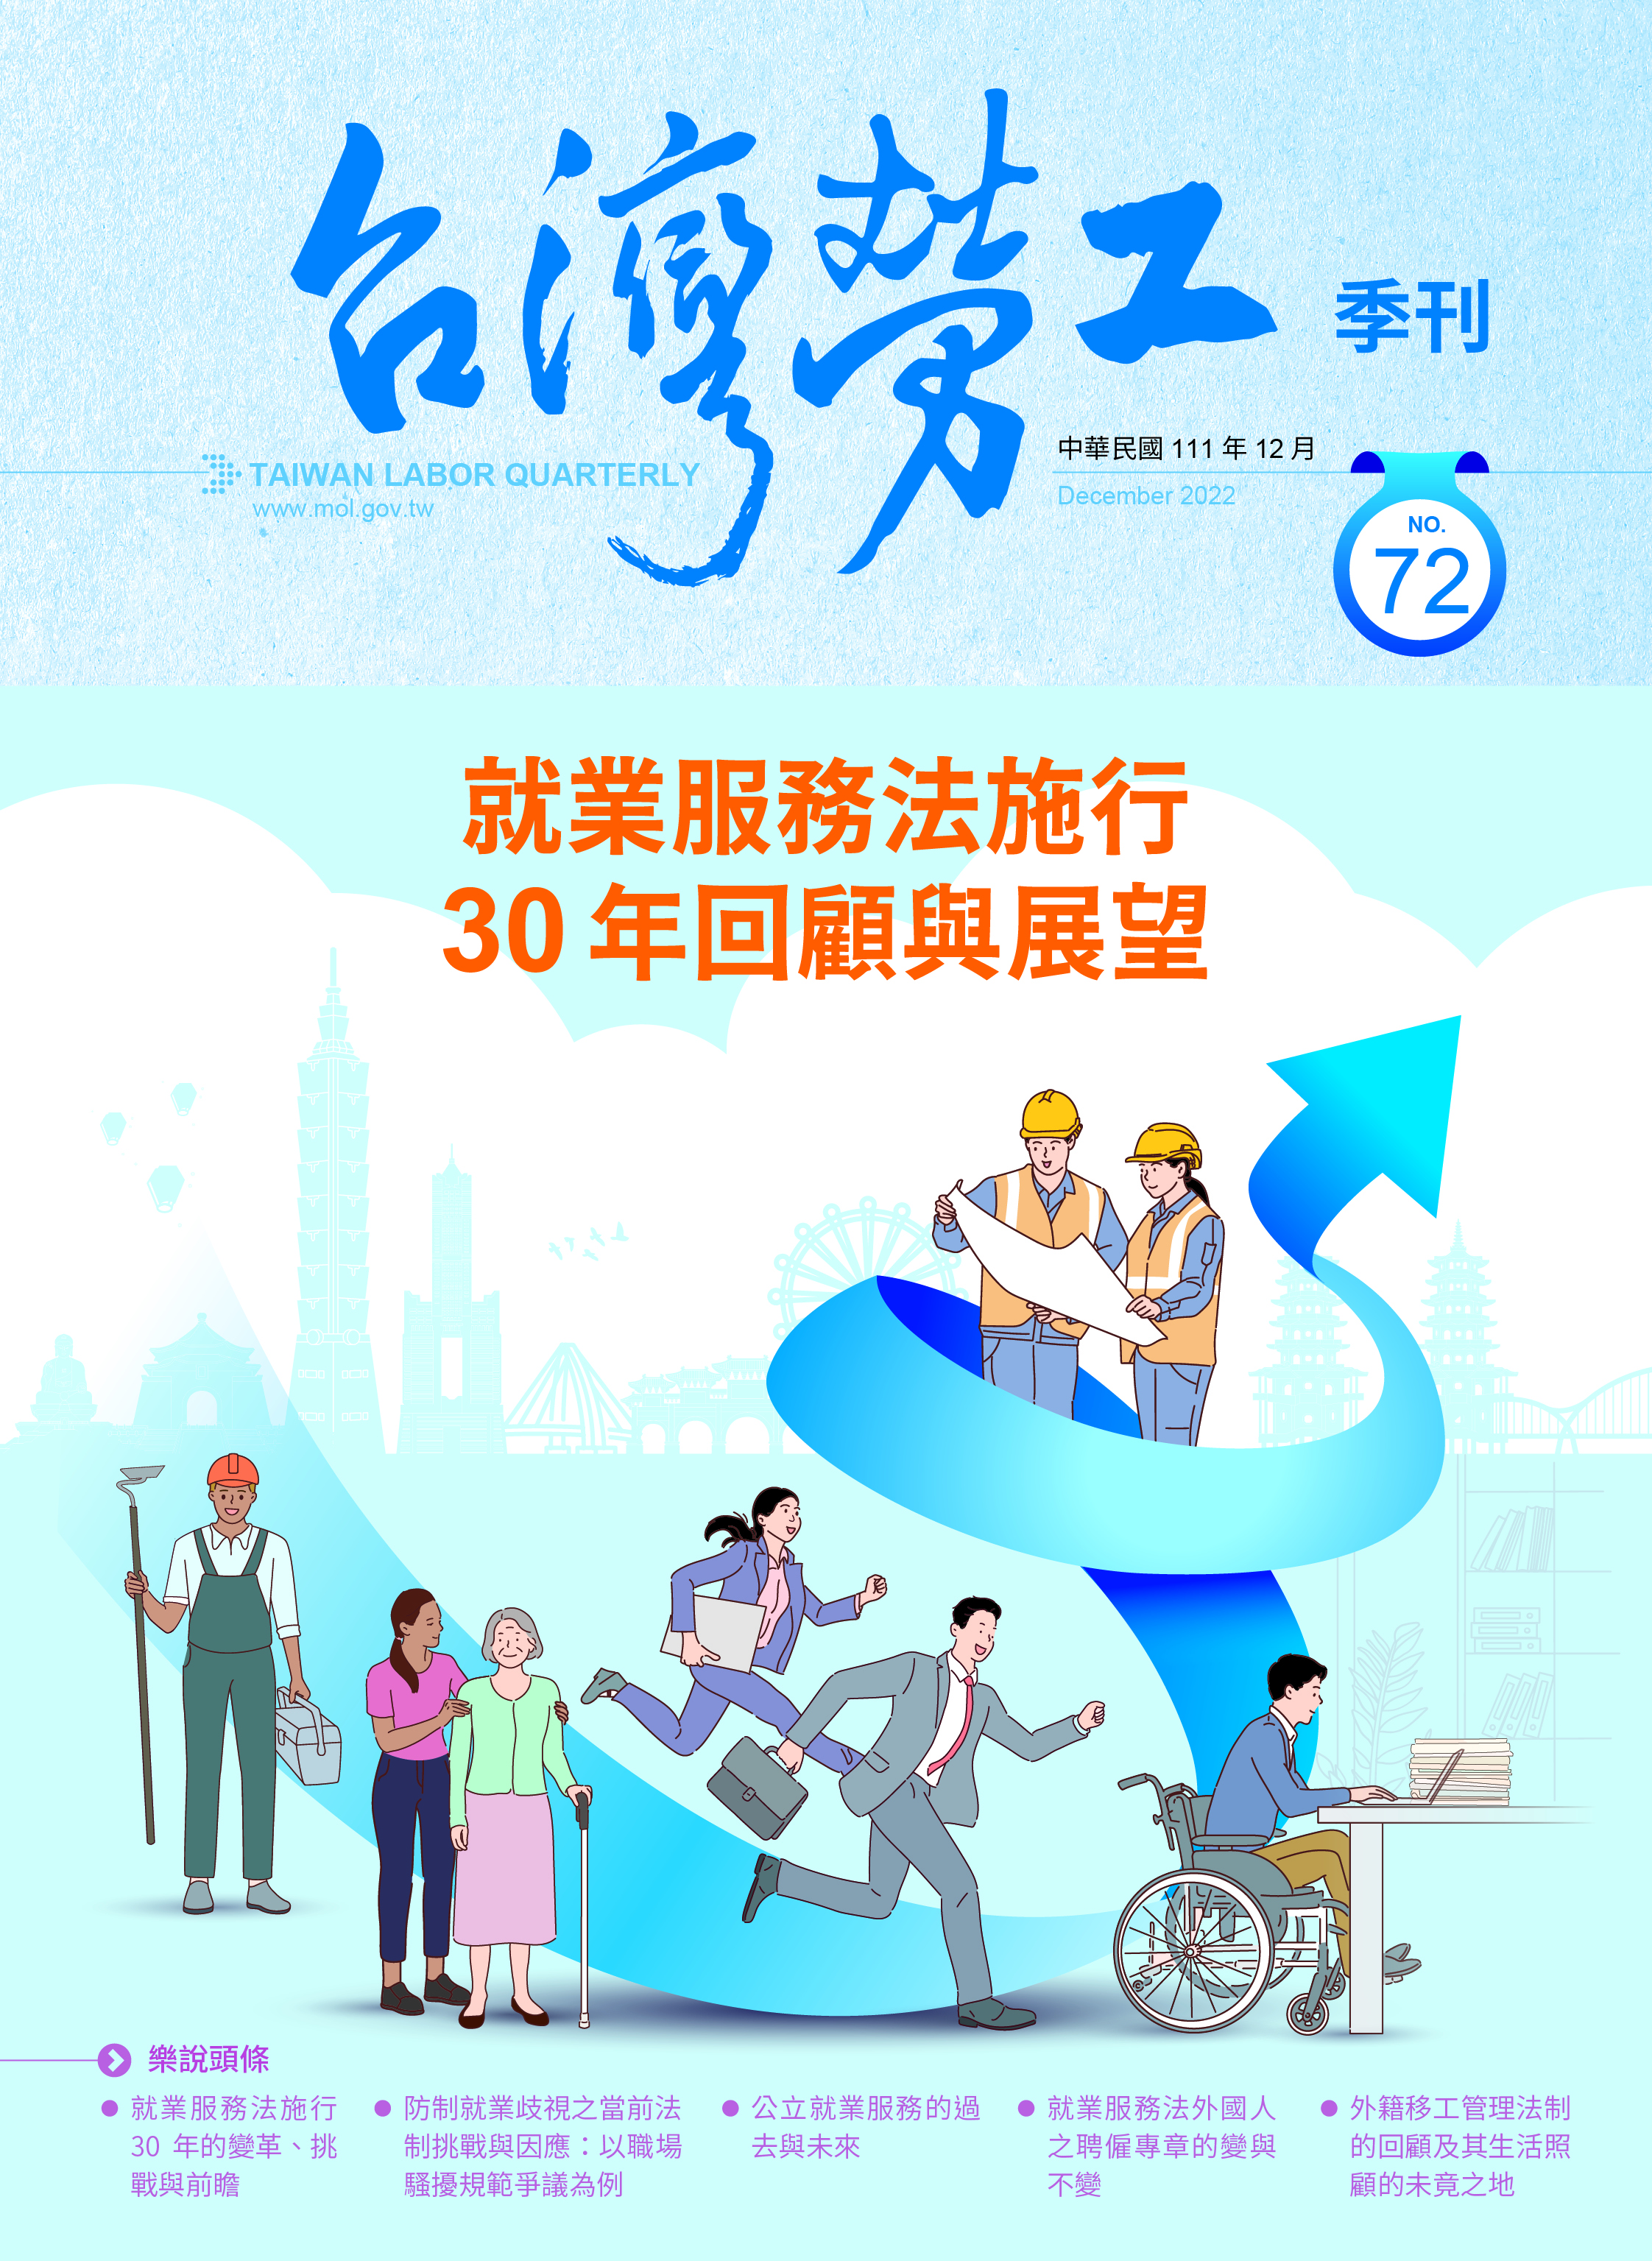 第72期-台灣勞工季刊 展示圖